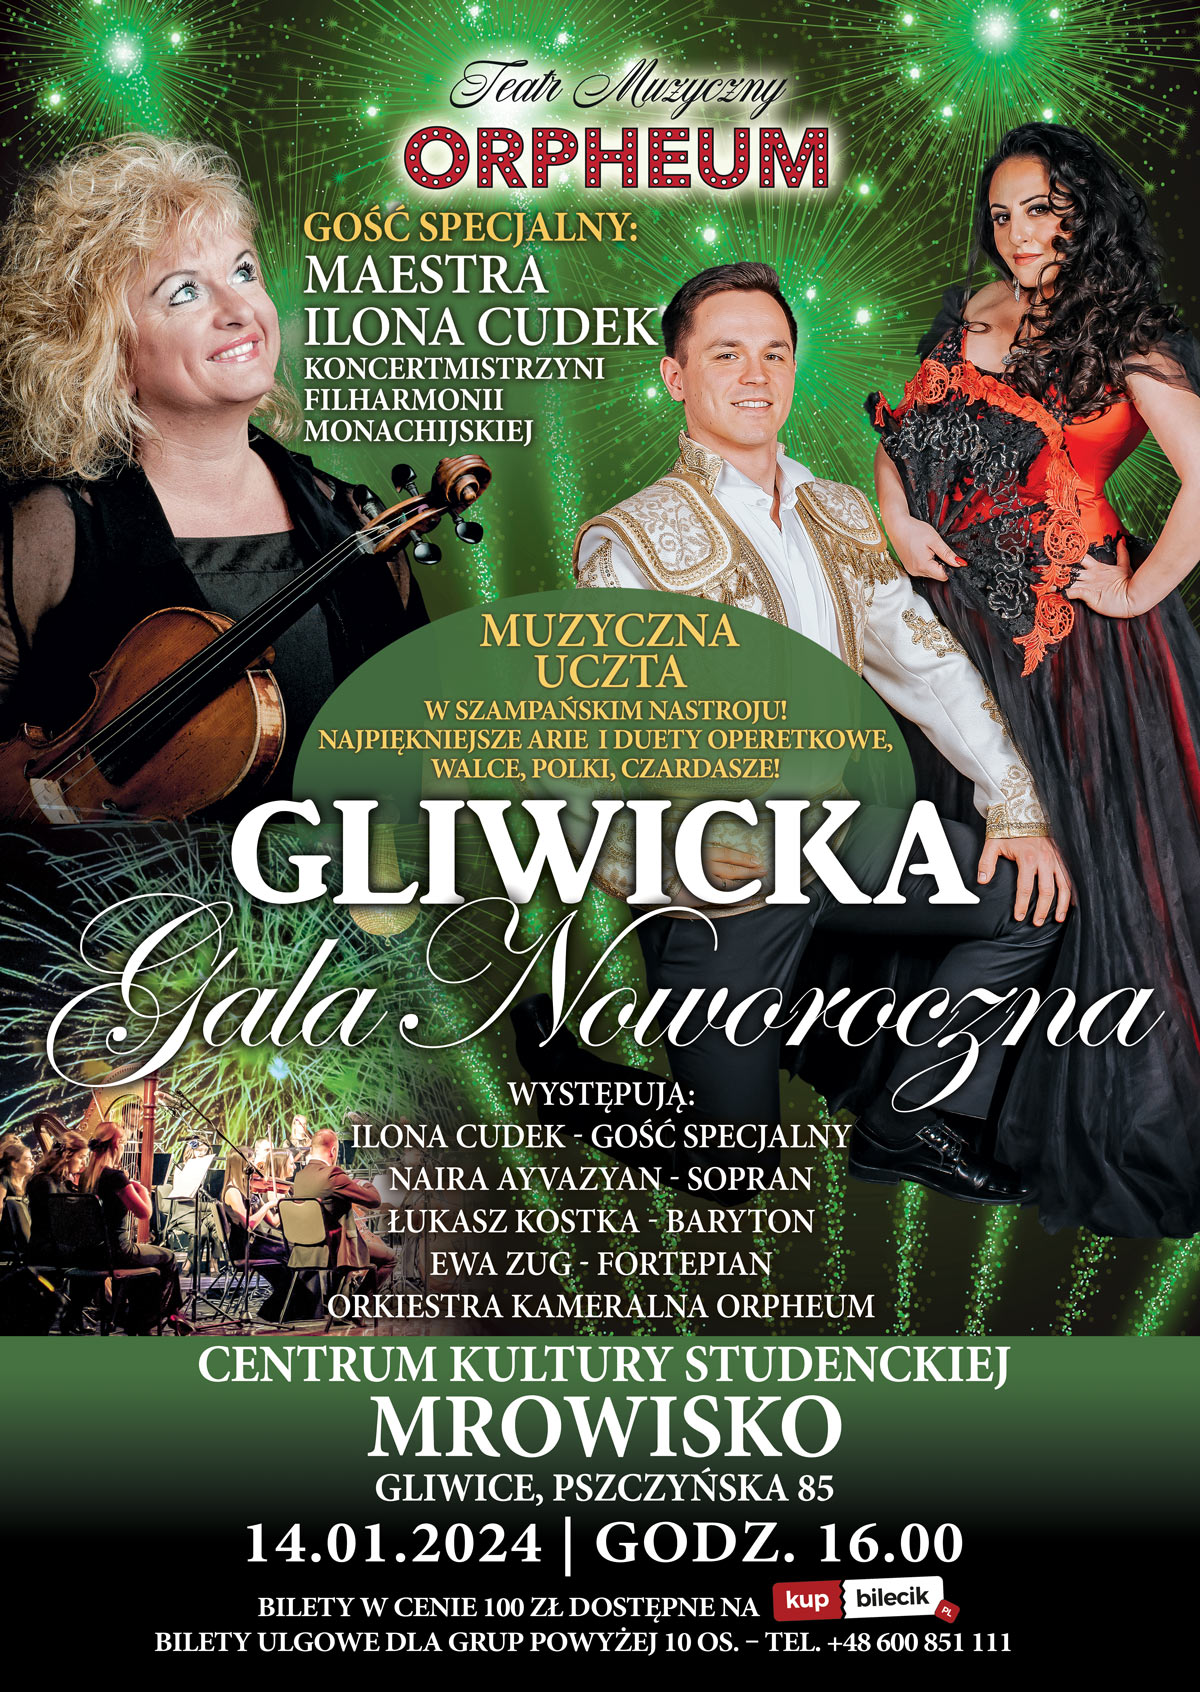 Gliwicka Gala Noworoczna Teatru Muzycznego Orpheum